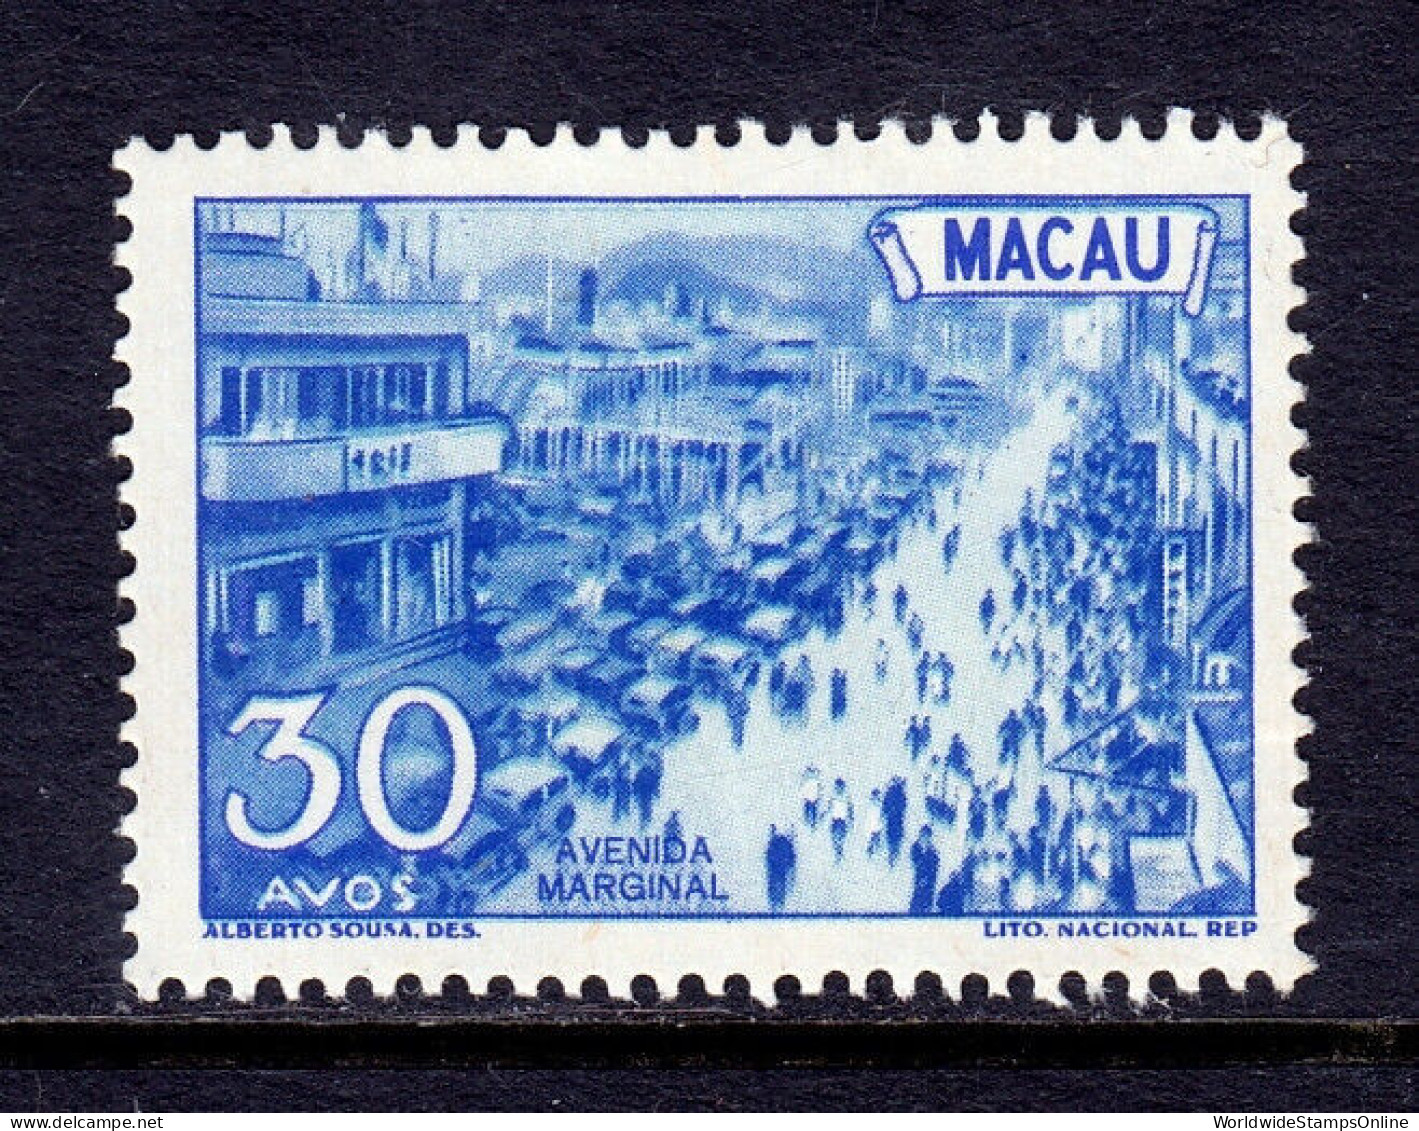 MACAO — SCOTT 346 —  1950 30a MARGINAL AVE PICTORIAL — MH — SCV $28 - Ongebruikt